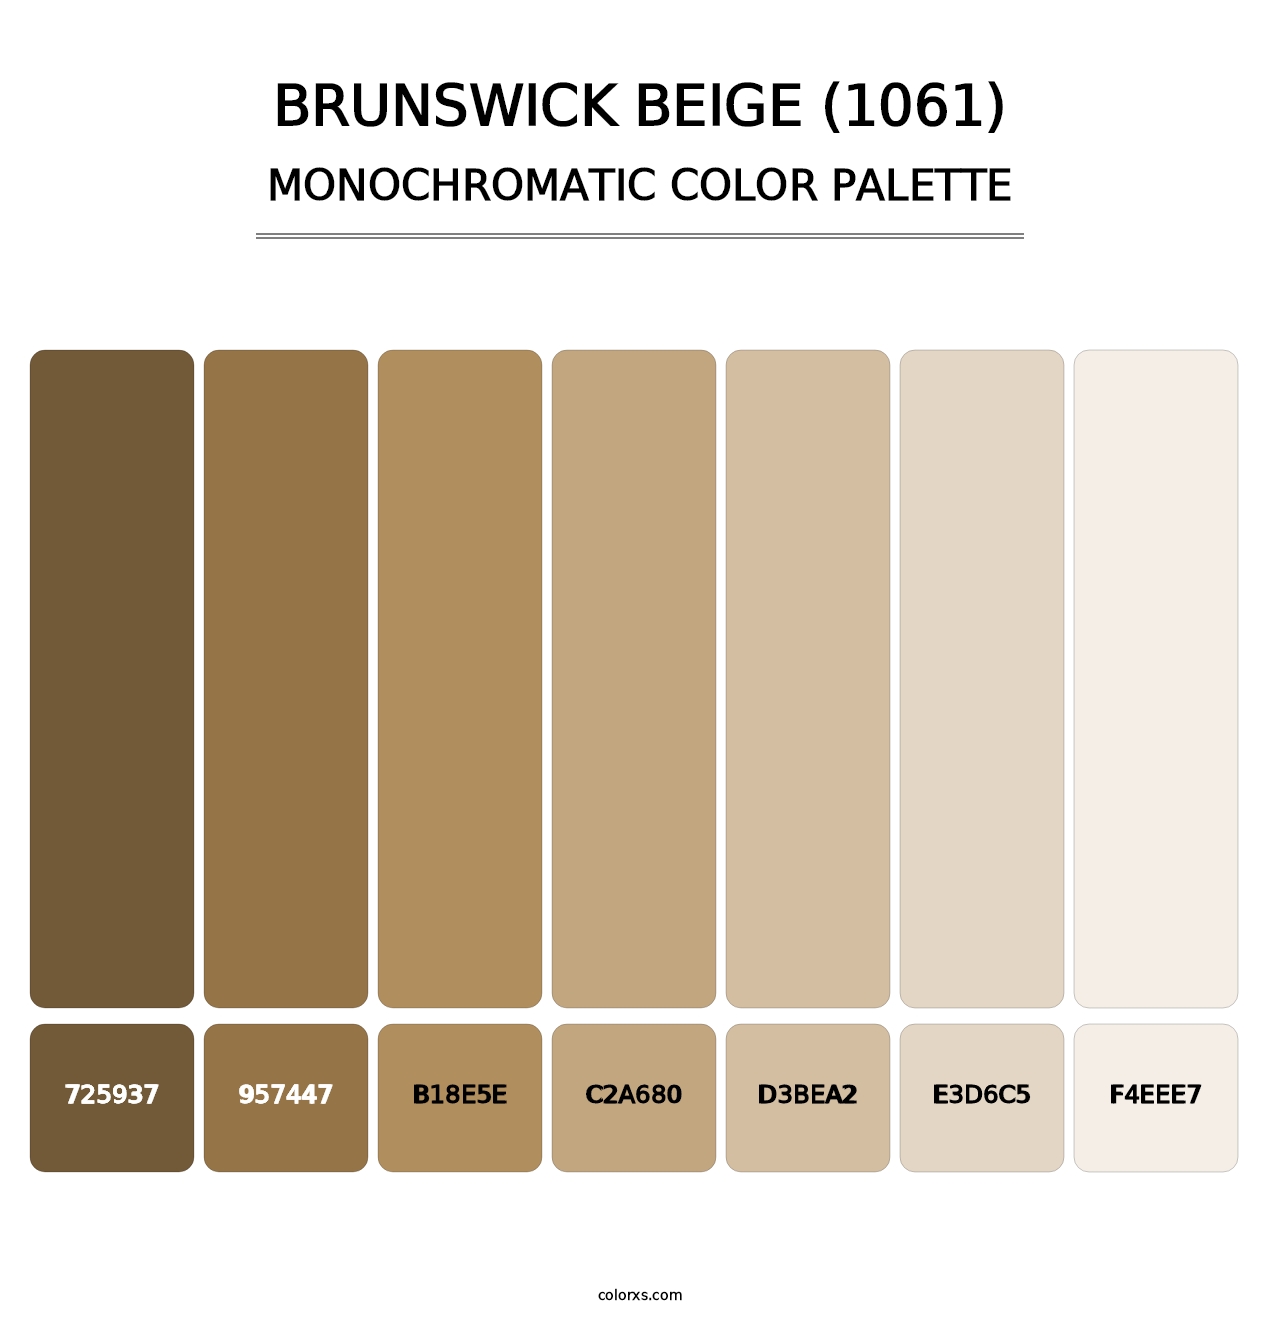 Brunswick Beige (1061) - Monochromatic Color Palette